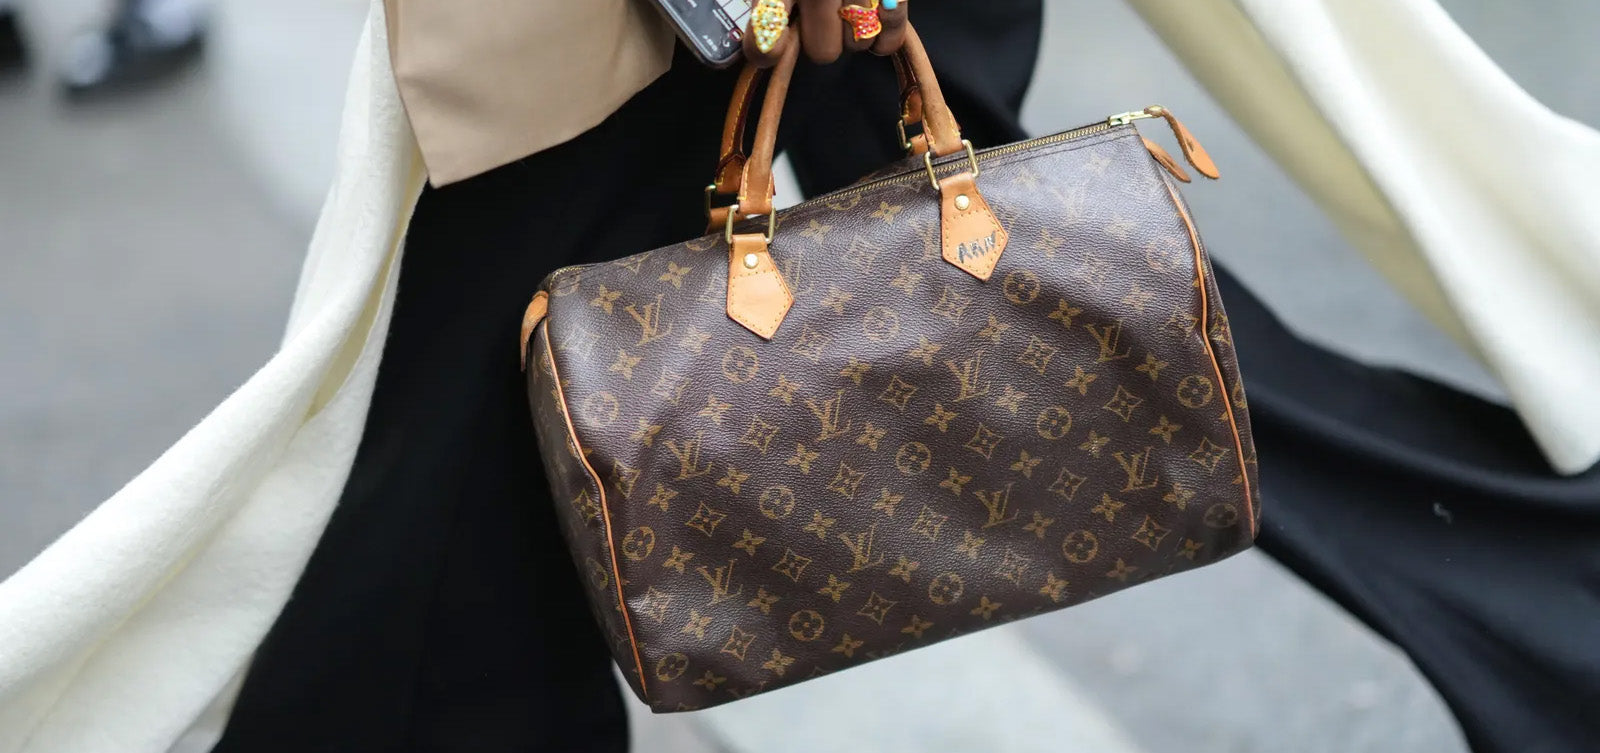 Hvordan kan man se Louis Vuitton er ægte?